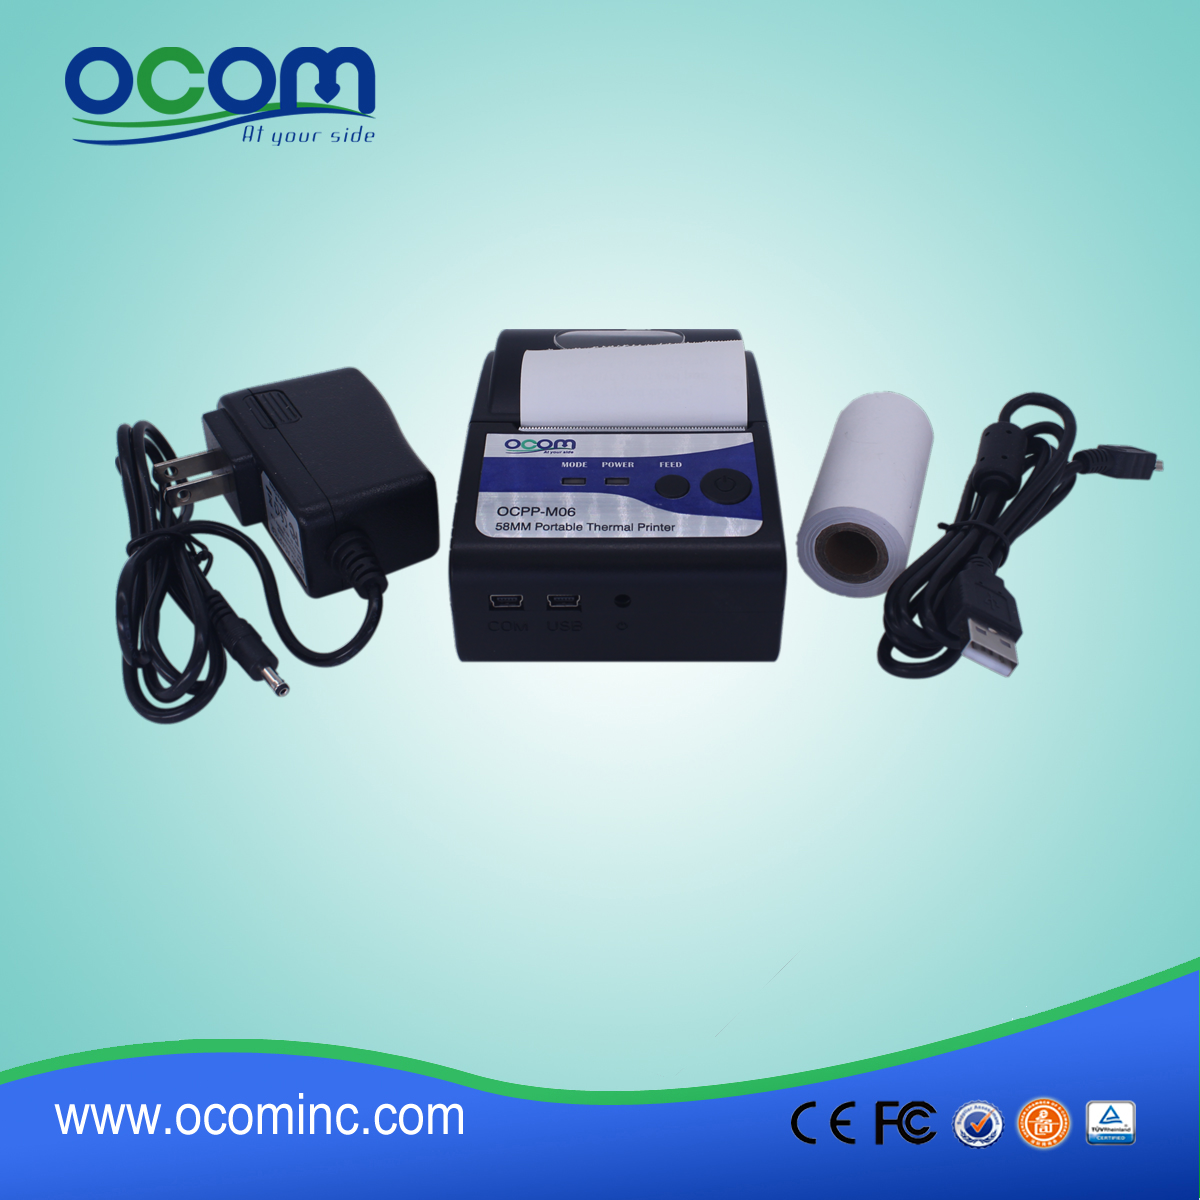 (OCPP-M06) OCOM vendedora caliente de la impresora androide, usb impresora, RS232 impresora